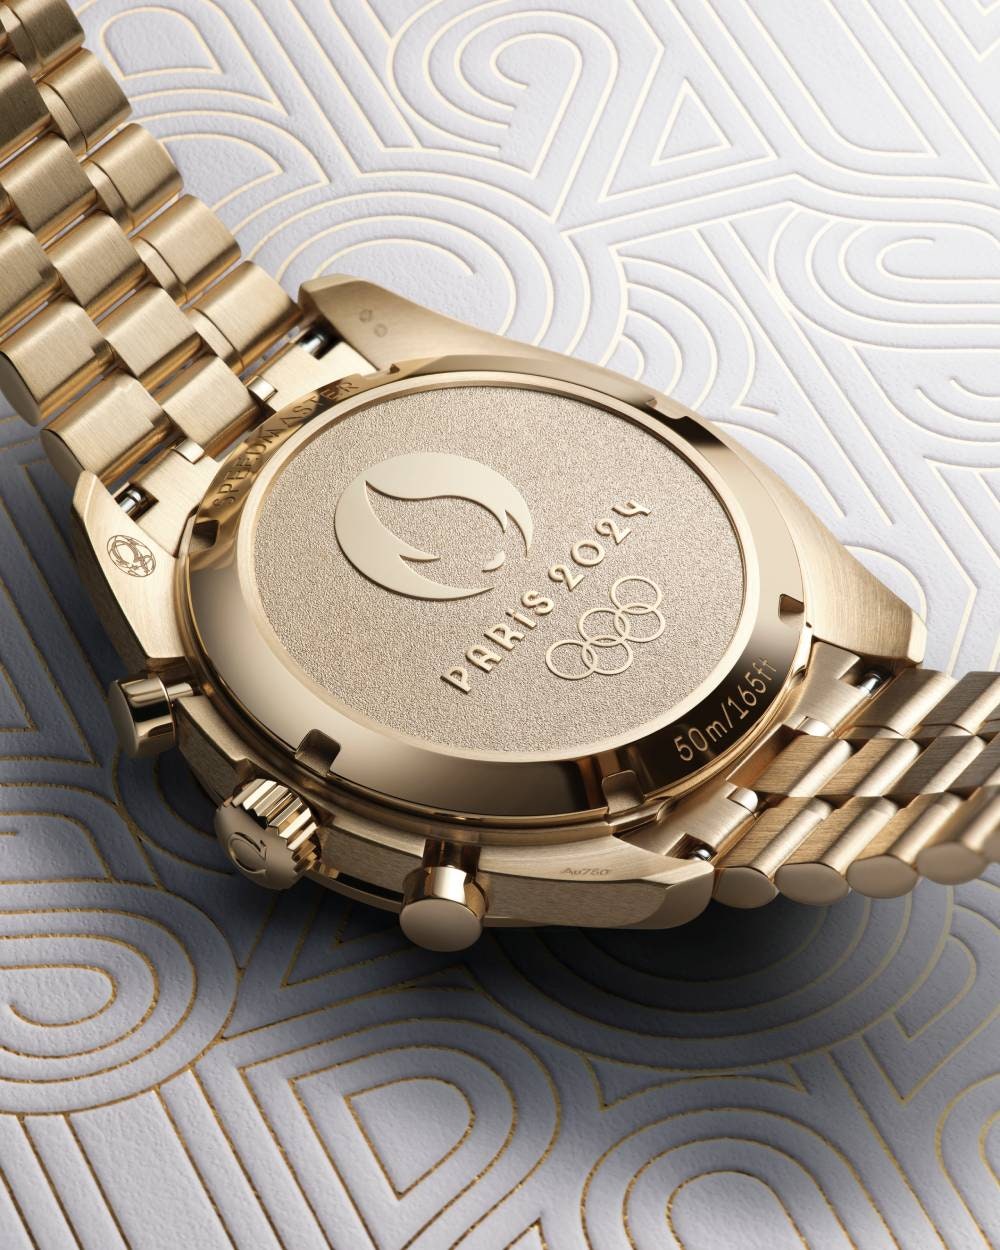 jeux olympiques 2024: cette montre omega a lancé le compte a rebours des festivités!